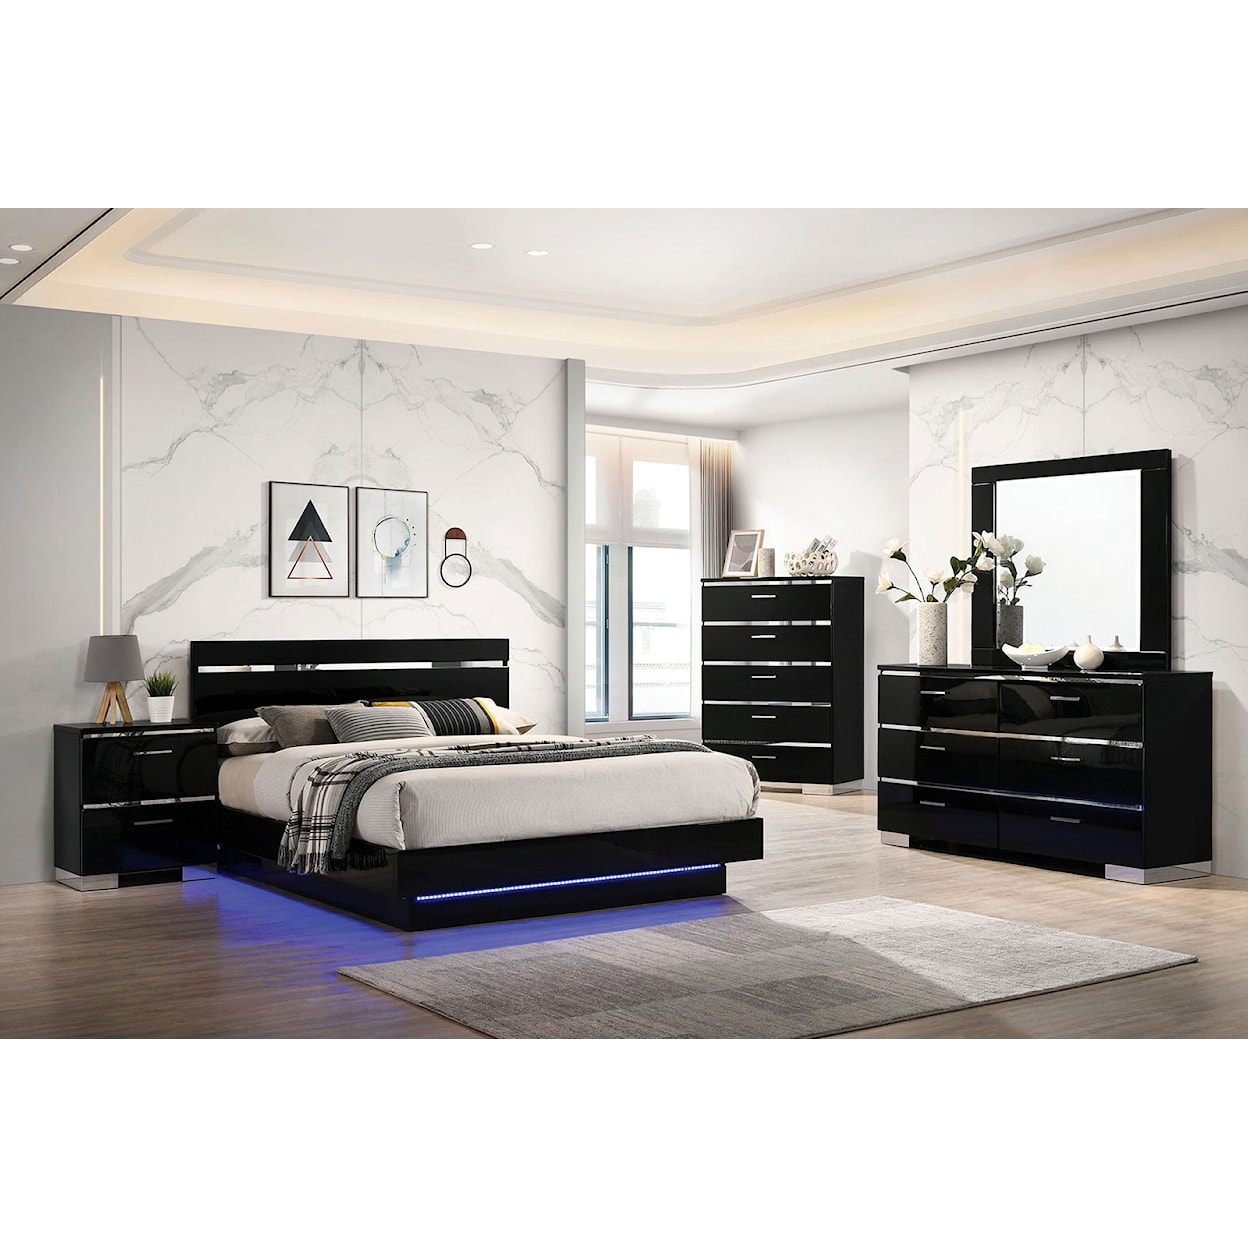 Furniture of America Erlach Queen Bed + 1NS + Dresser + Mirror + Chest